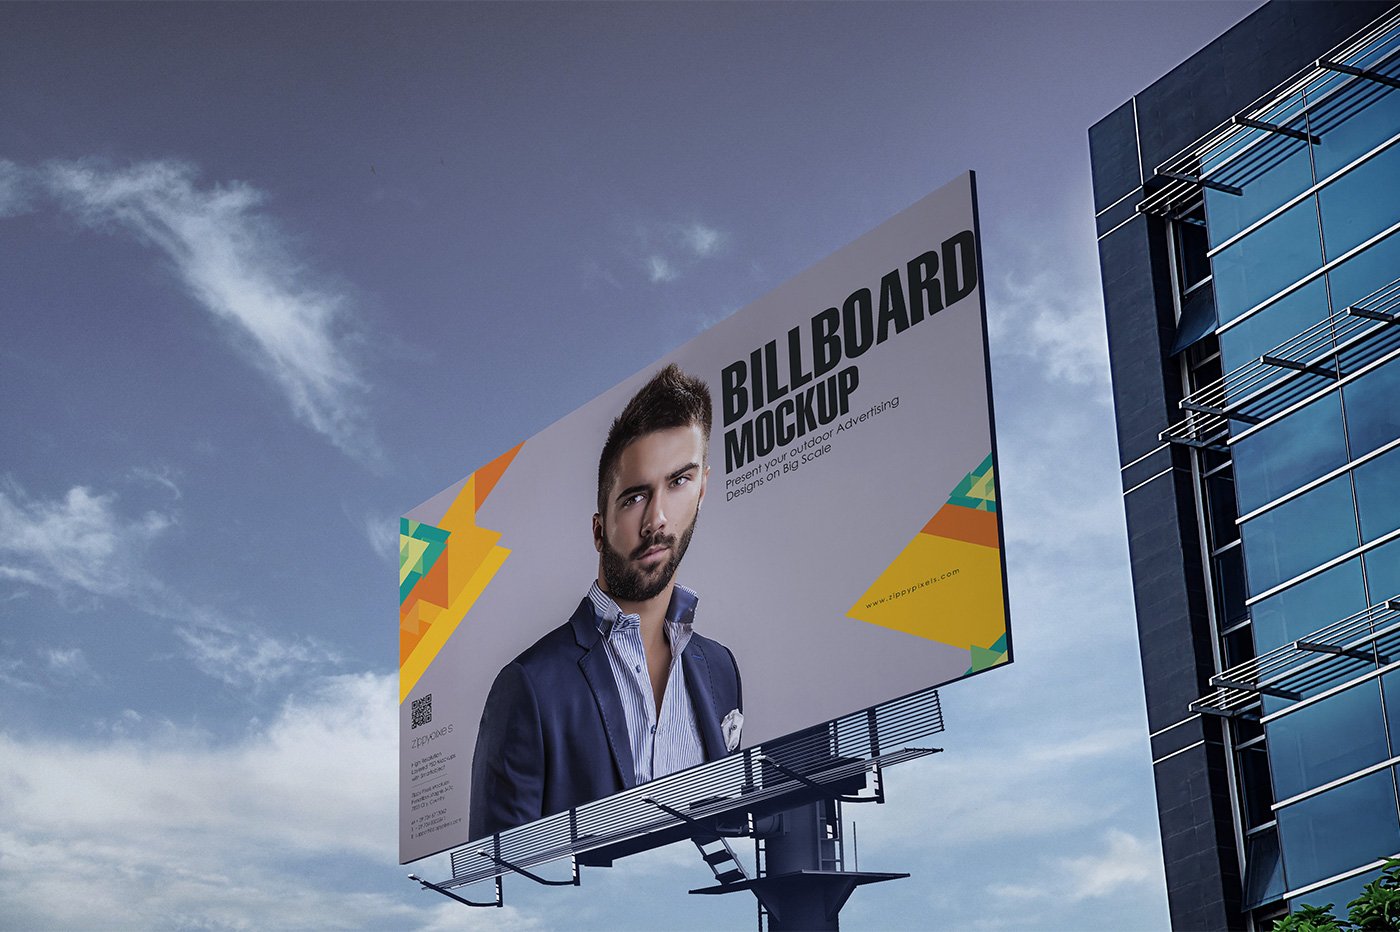 billboard s mockup vol 1 2 145